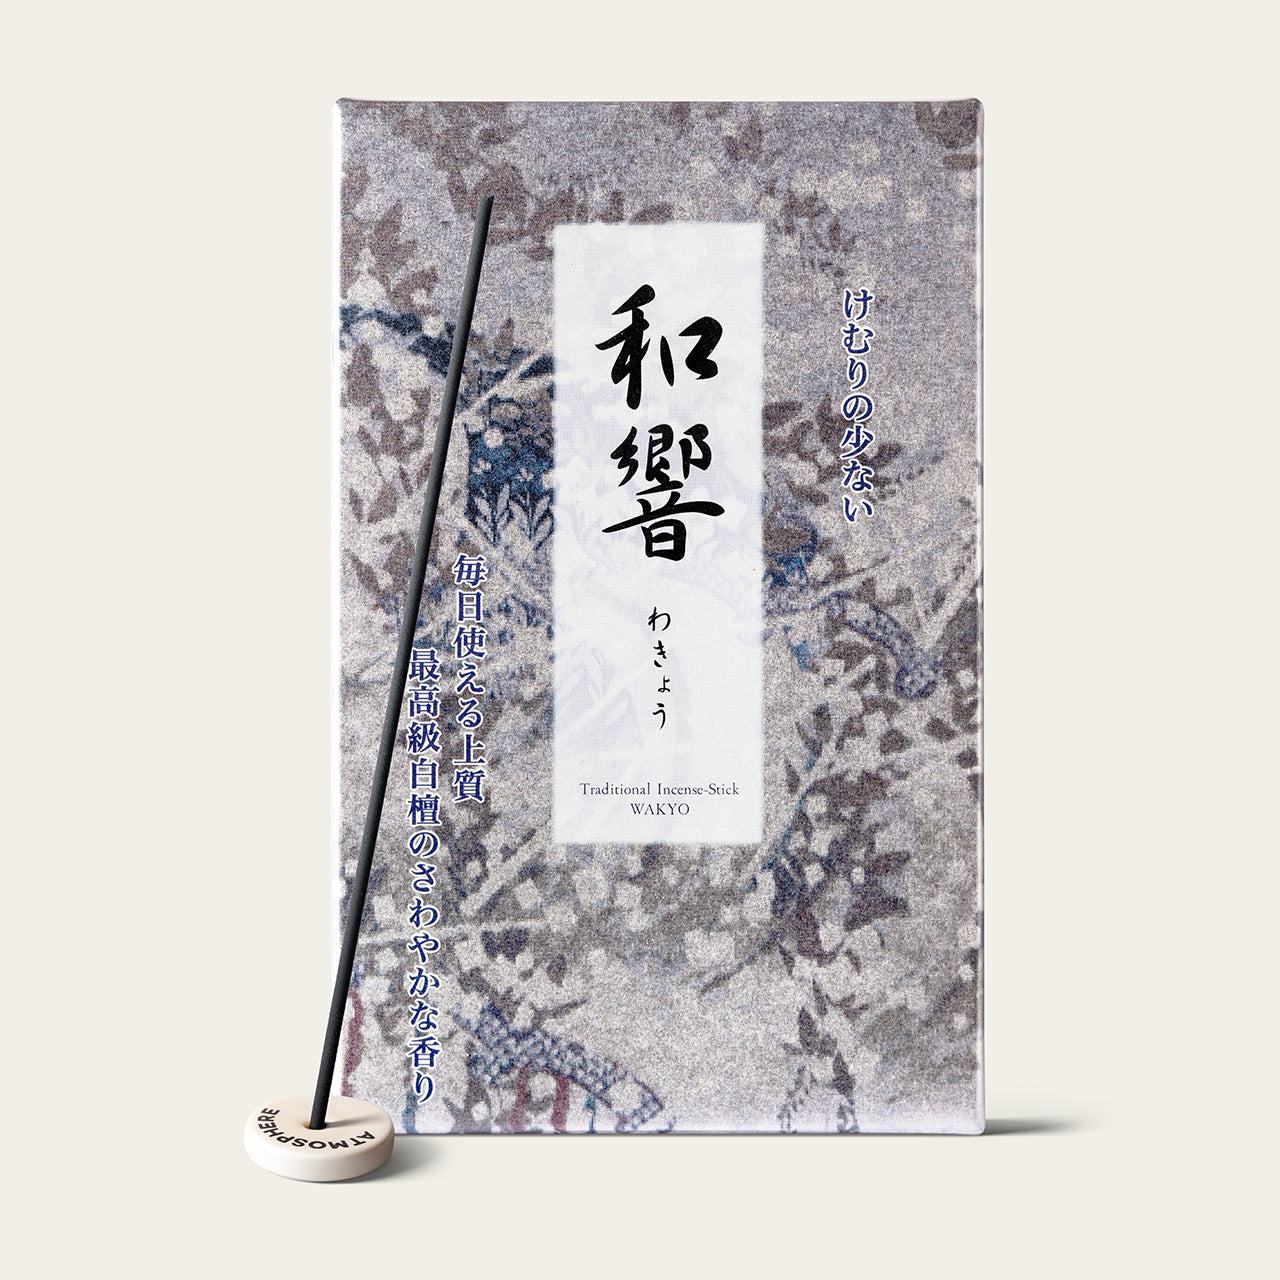 Shorindo Harmony Wakyo Low Smoke Japanese incense sticks (500 sticks) with Atmosphere ceramic incense holder